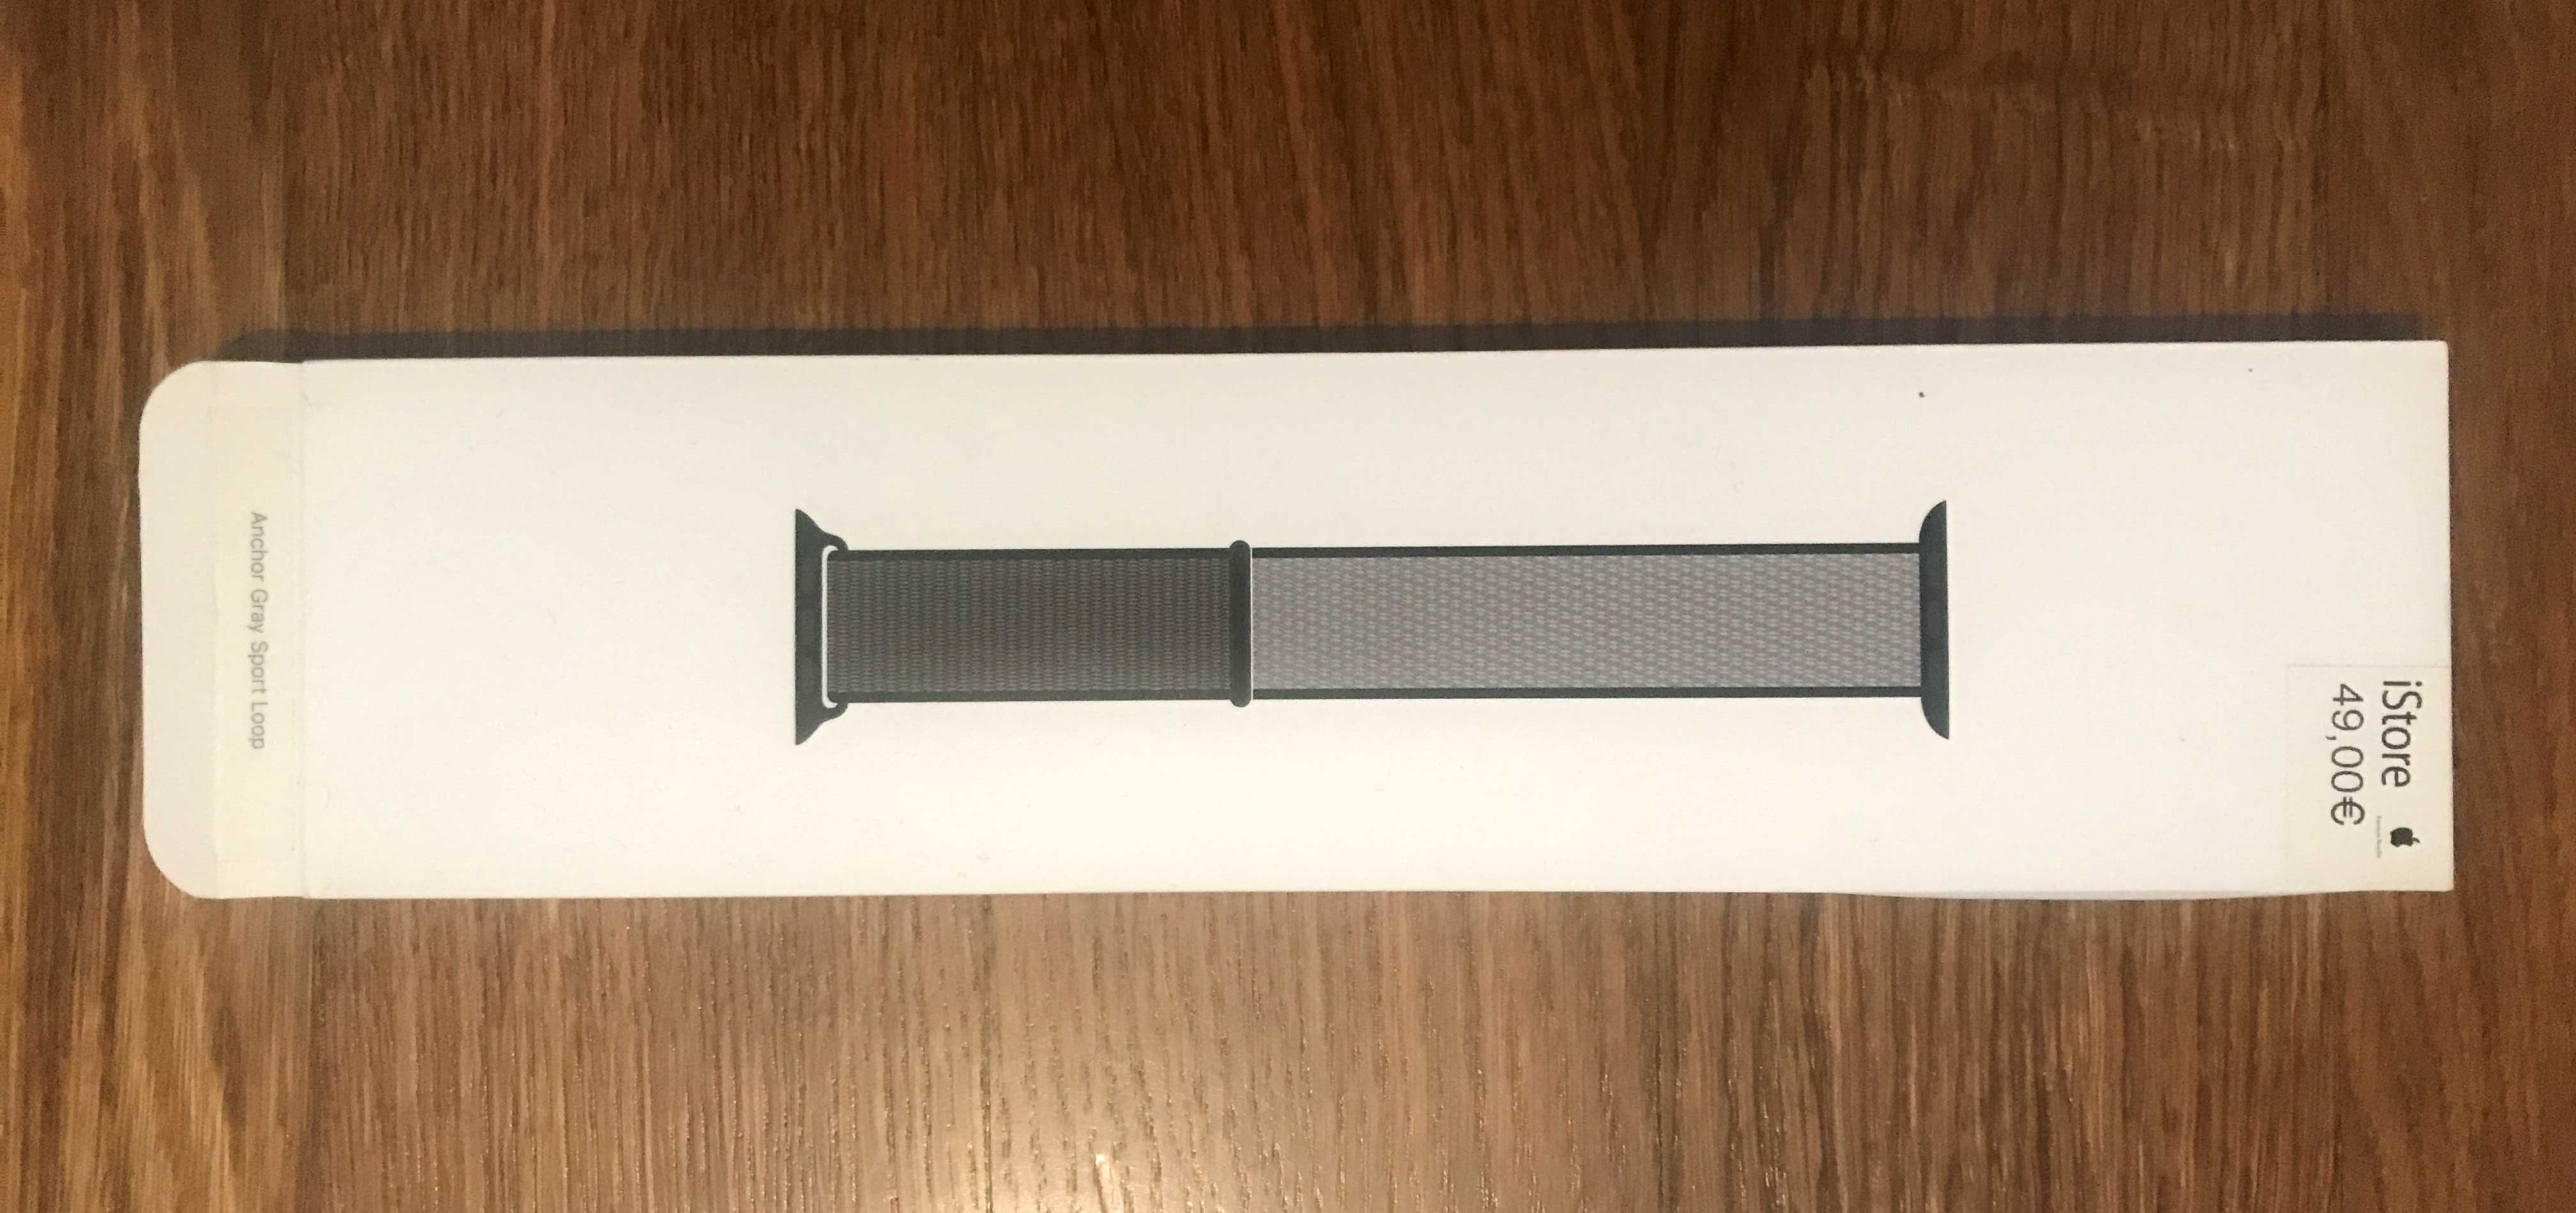 Pulseira de nylon XL original para Apple Watch